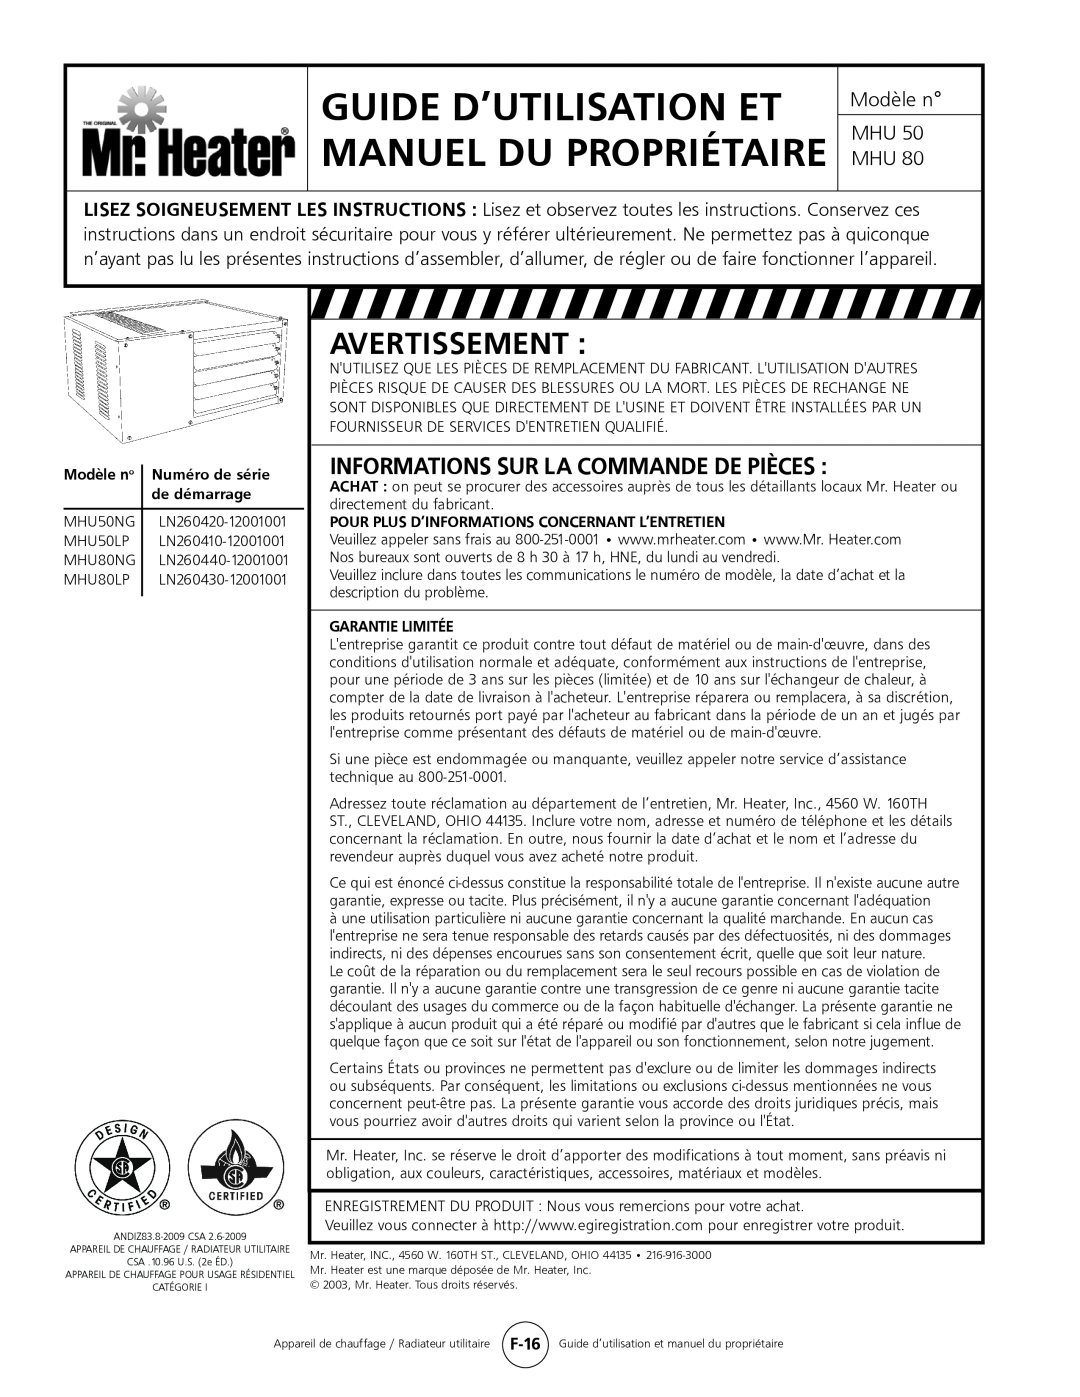 Mr. Heater MHU 50 Avertissement, Informations Sur La Commande De Pièces, Guide D’Utilisation Et Manuel Du Propriétaire 